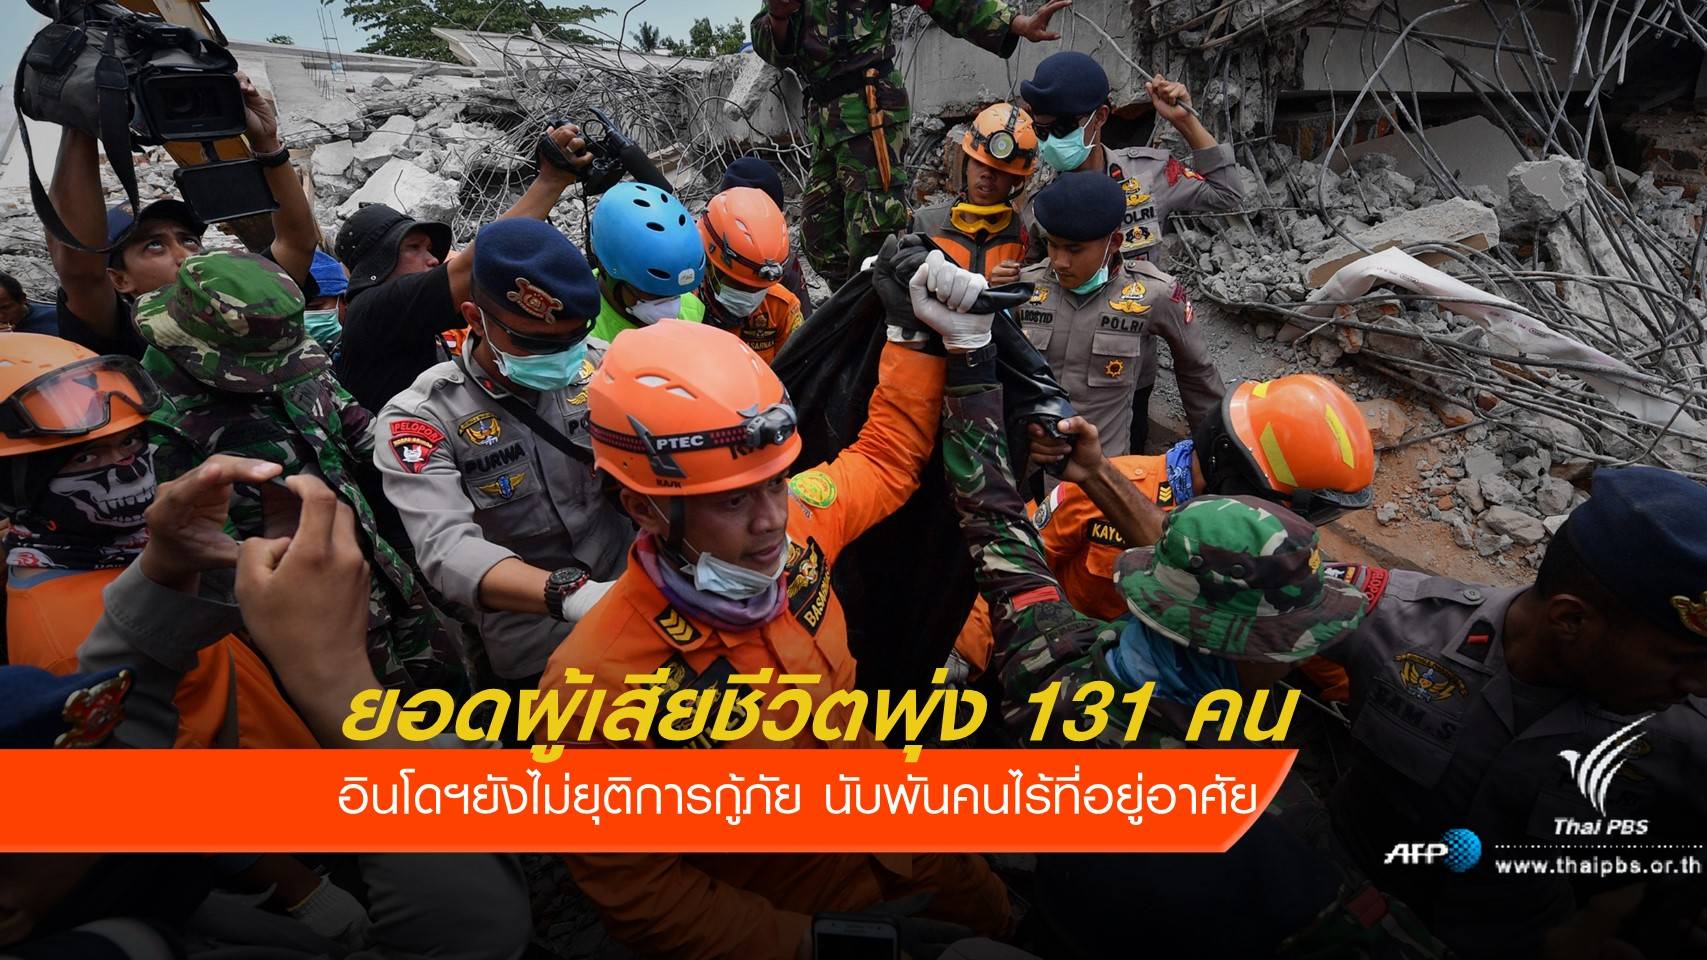  อินโดนีเซียยังไม่ยุติการกู้ภัยแผ่นดินไหว ยอดผู้เสียชีวิตพุ่ง 131 คน 